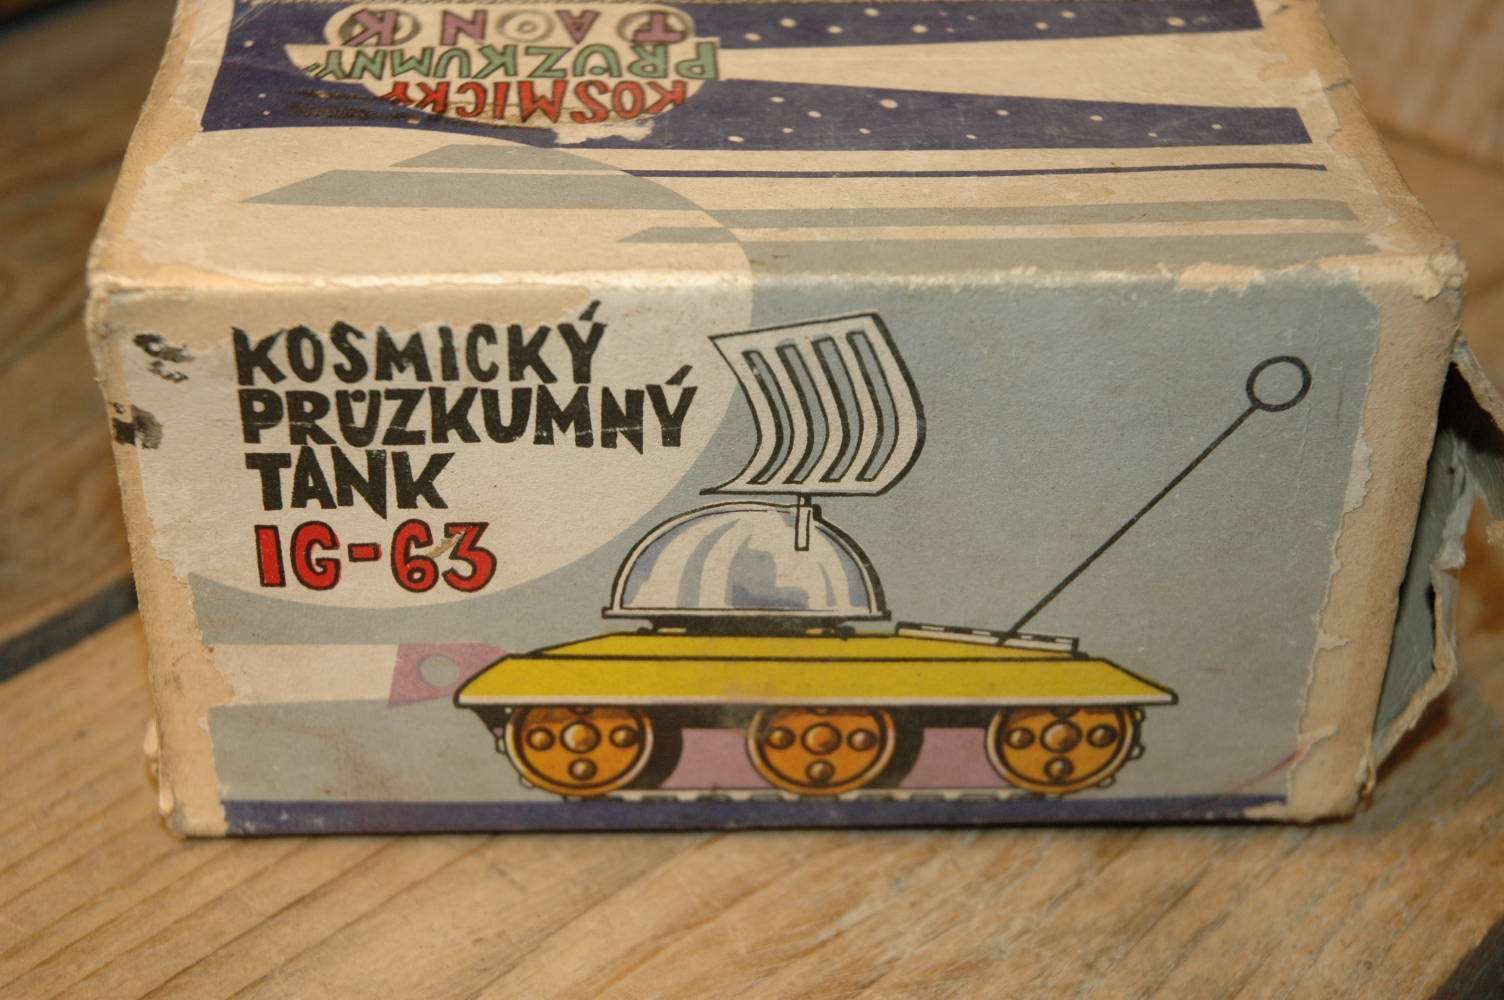 Ites - Kosmicky Pruzkumny Tank IG-63